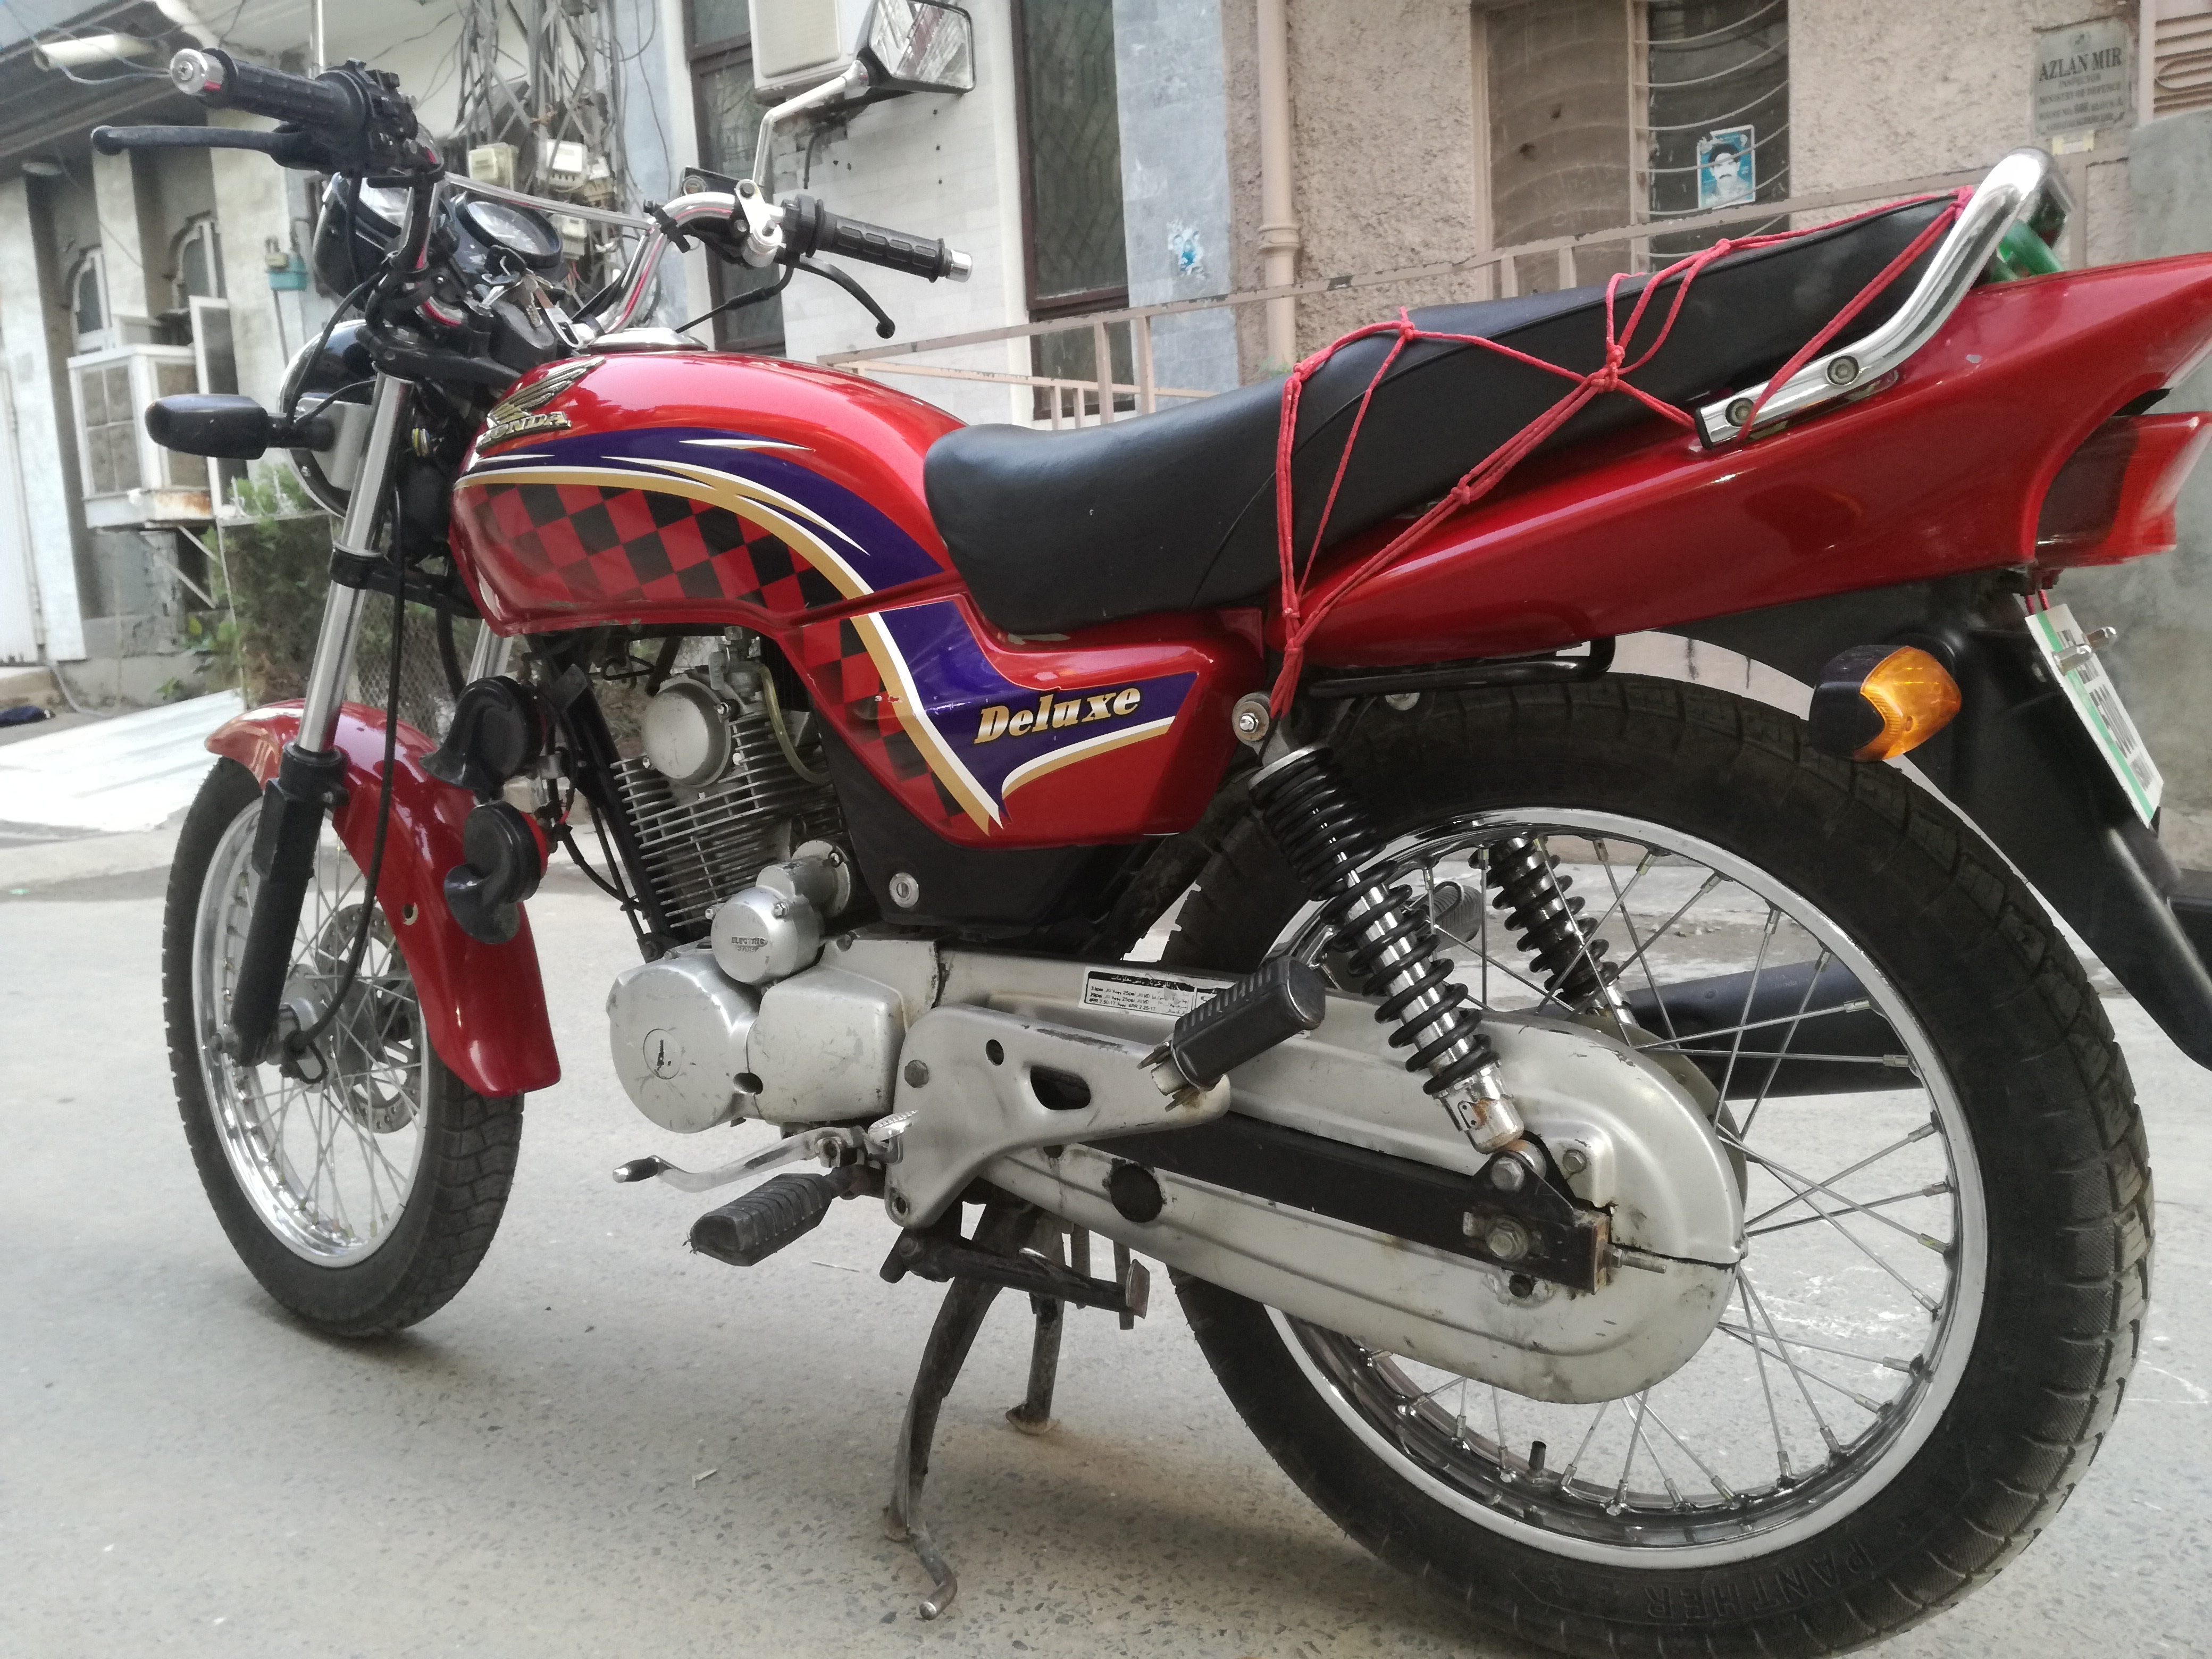 Honda Deluxe Bike Price In Pakistan